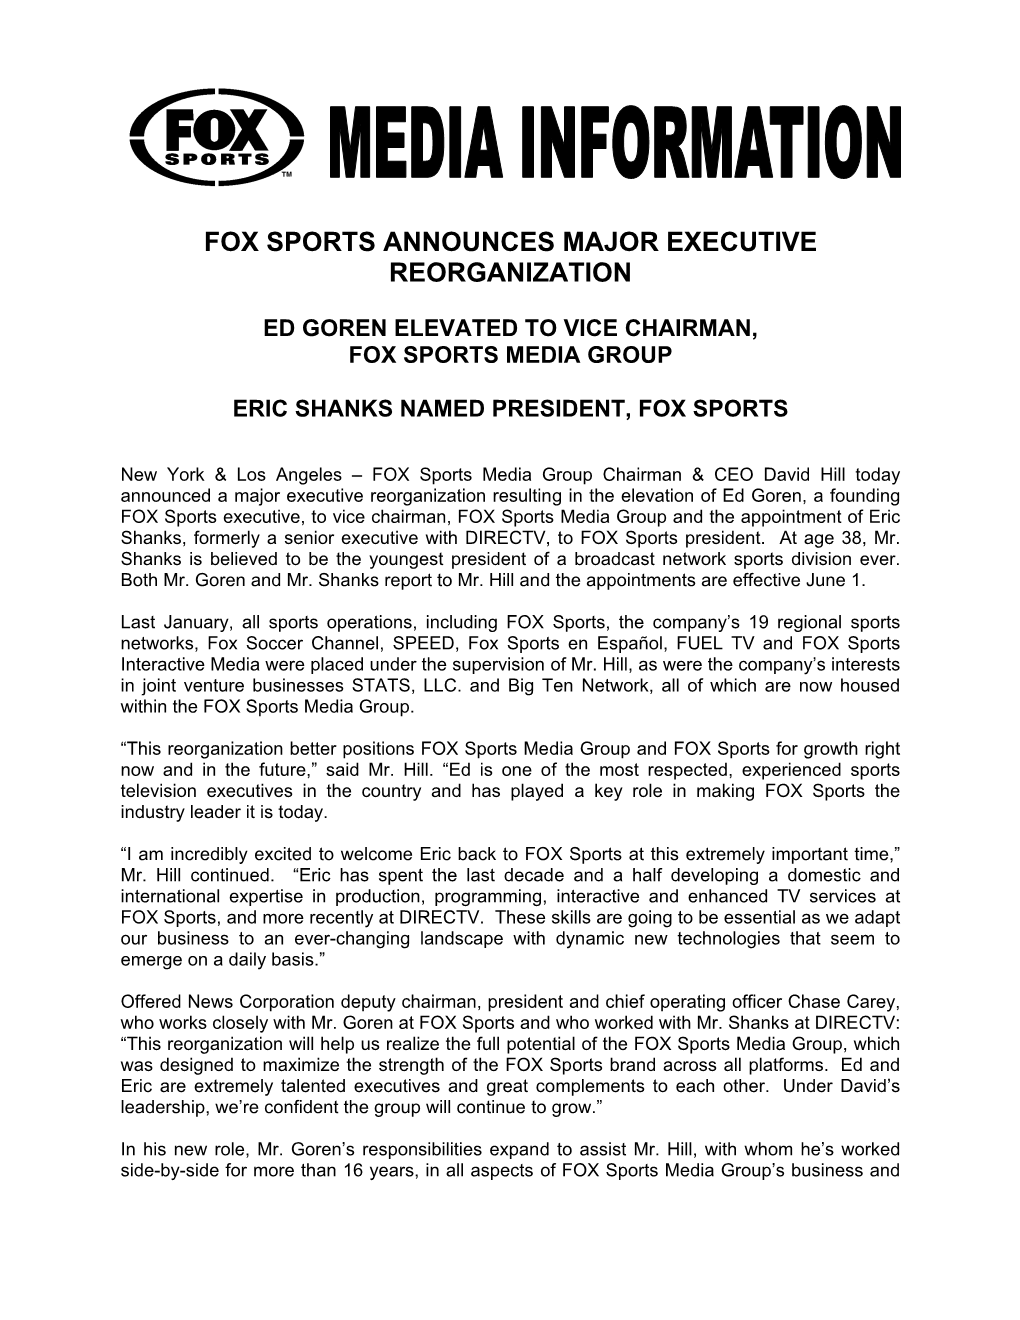 Fox Sports Announces Major Executive Reorganization